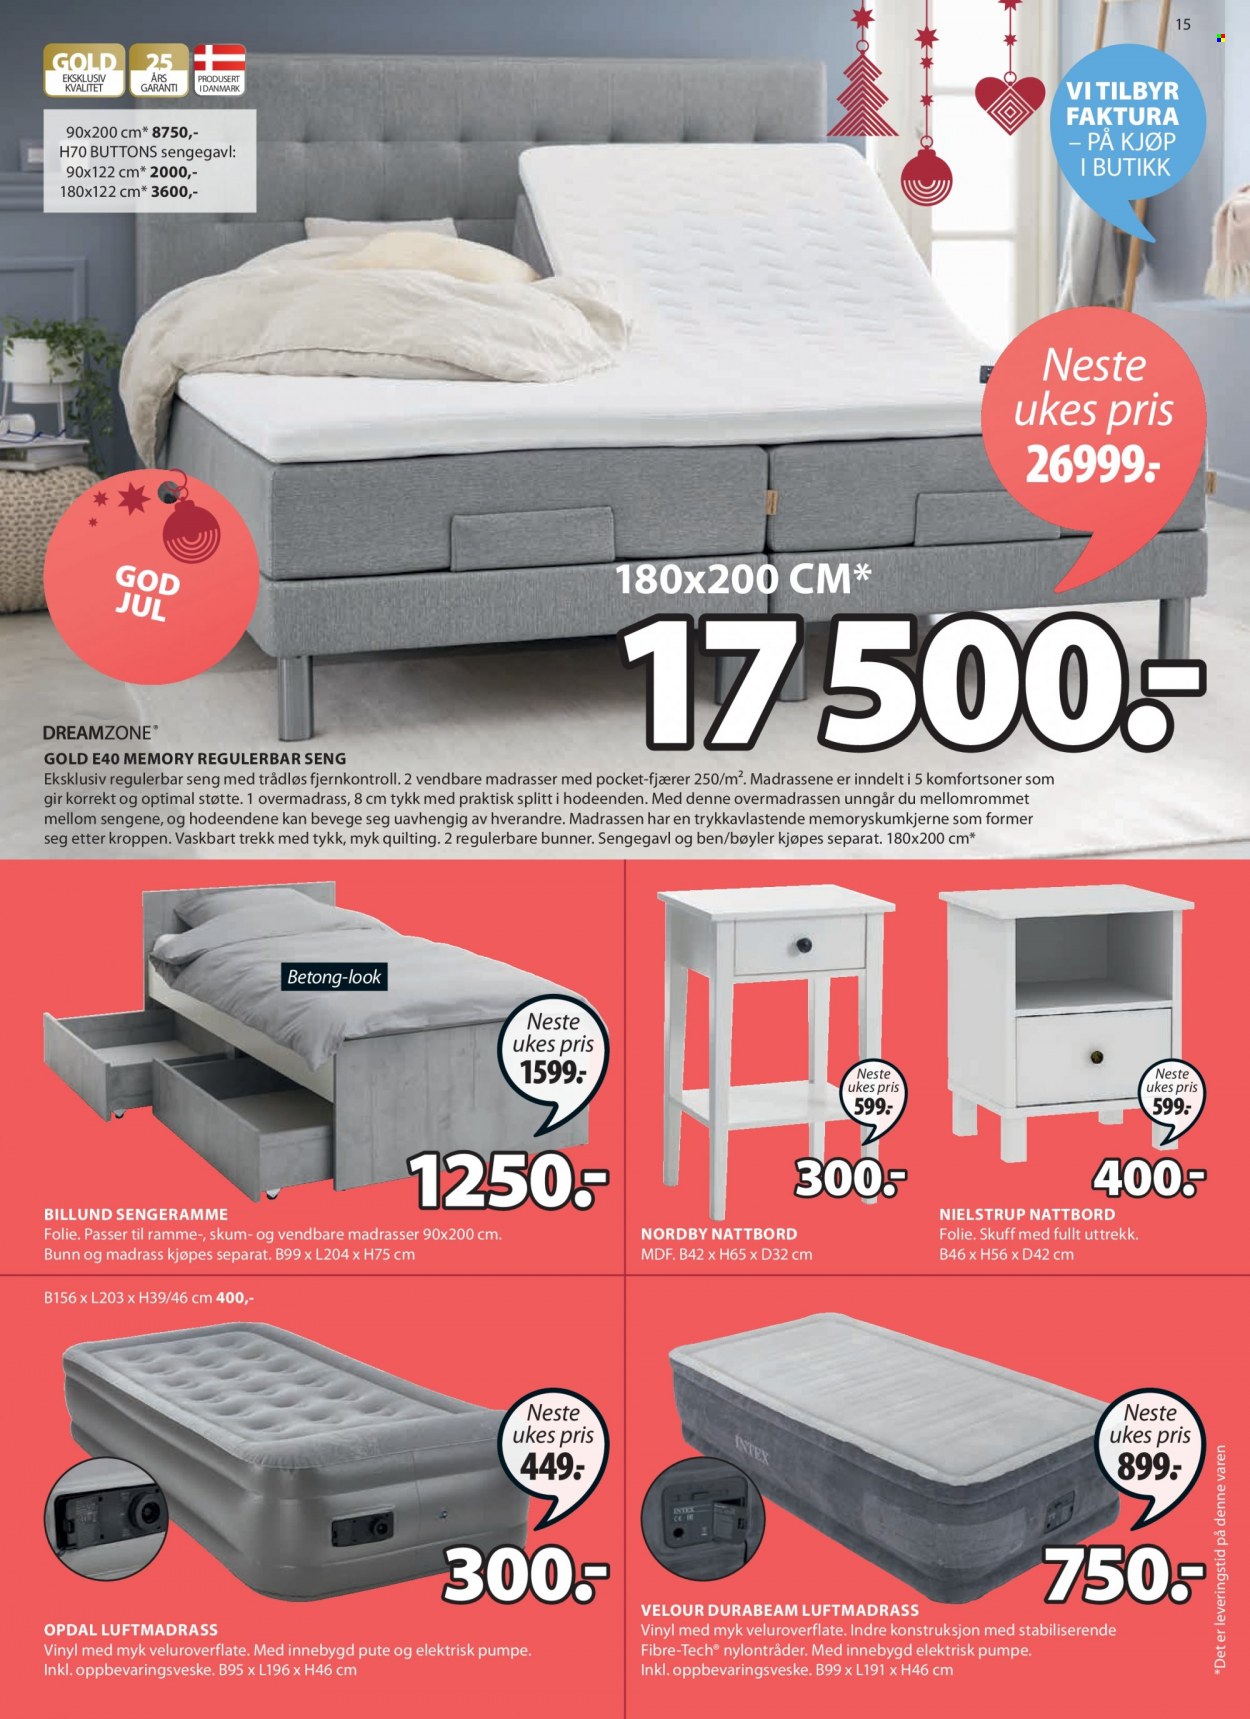 thumbnail - Kundeavis JYSK - 29.11.2021 - 4.12.2021 - Produkter fra tilbudsaviser - nattbord, pute, regulerbar seng, seng, madrass. Side 15.